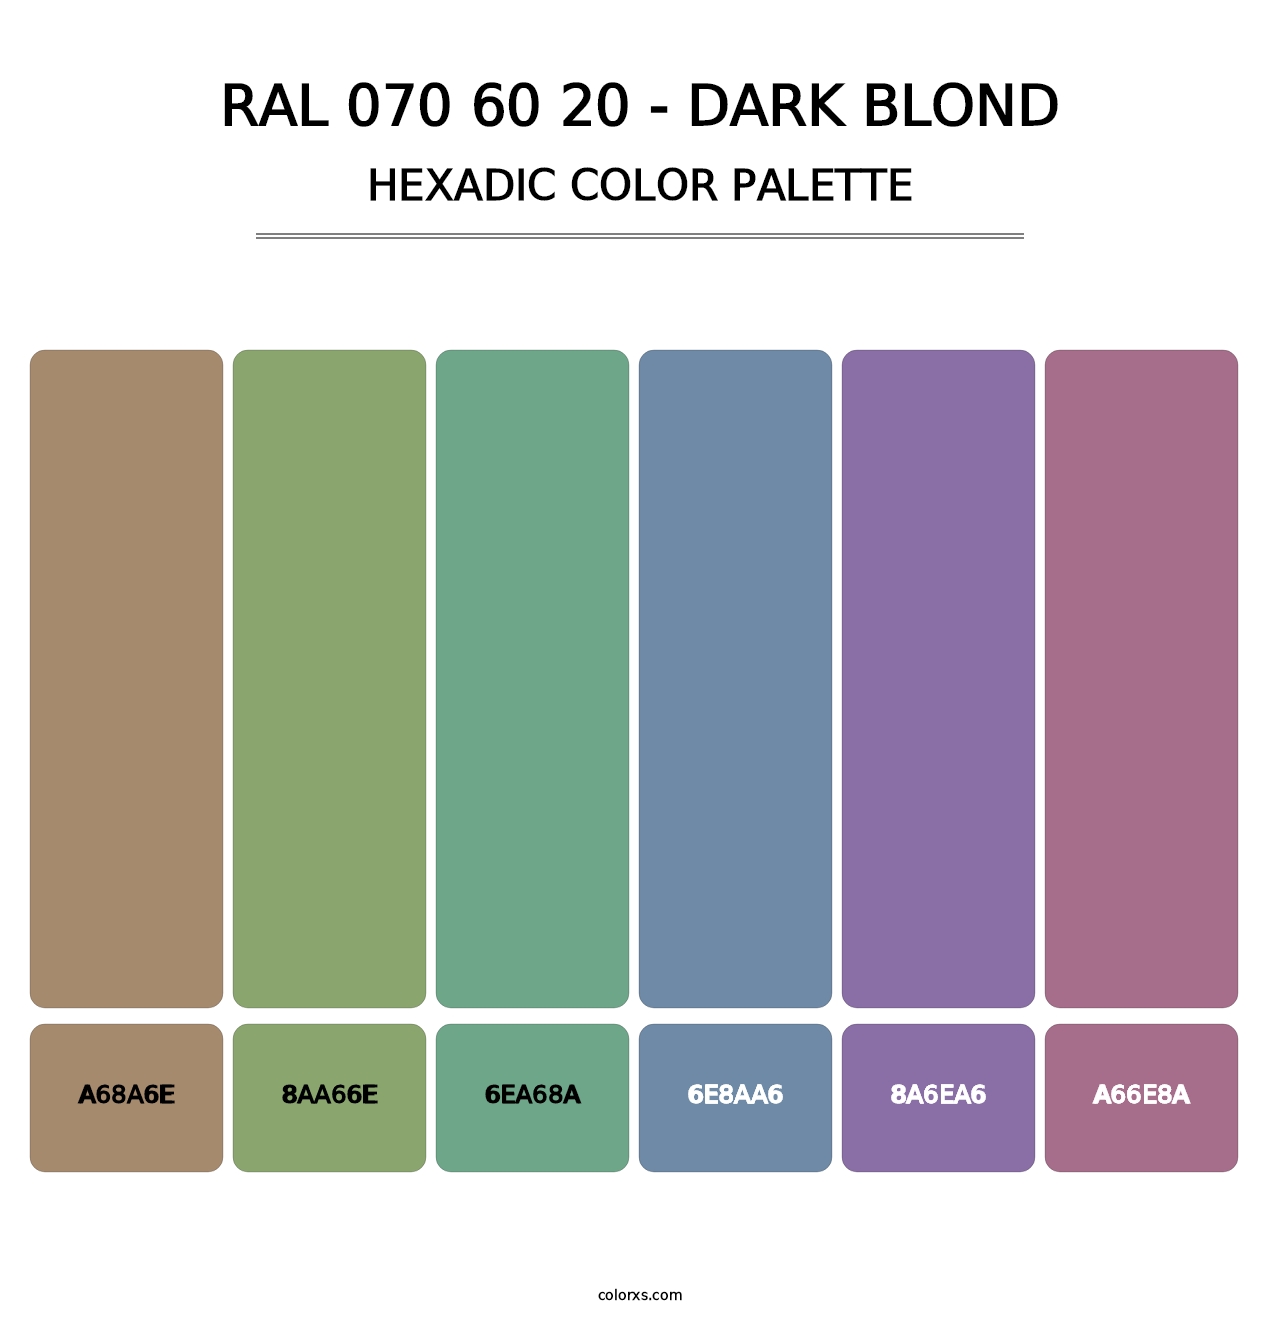 RAL 070 60 20 - Dark Blond - Hexadic Color Palette